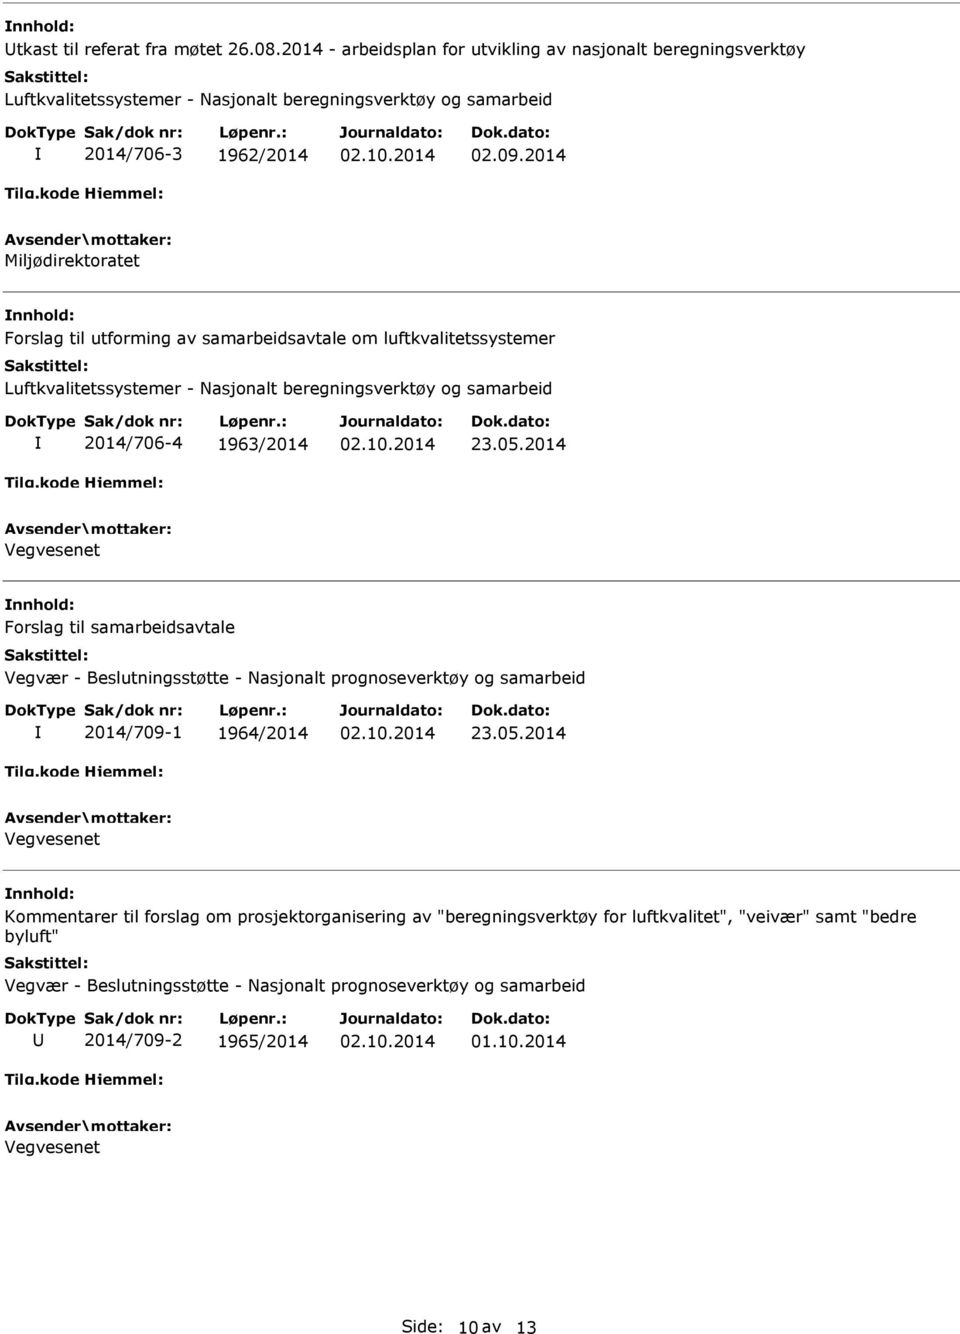 2014 Forslag til samarbeidsavtale Vegvær - Beslutningsstøtte - Nasjonalt prognoseverktøy og samarbeid 2014/709-1 1964/2014 23.05.